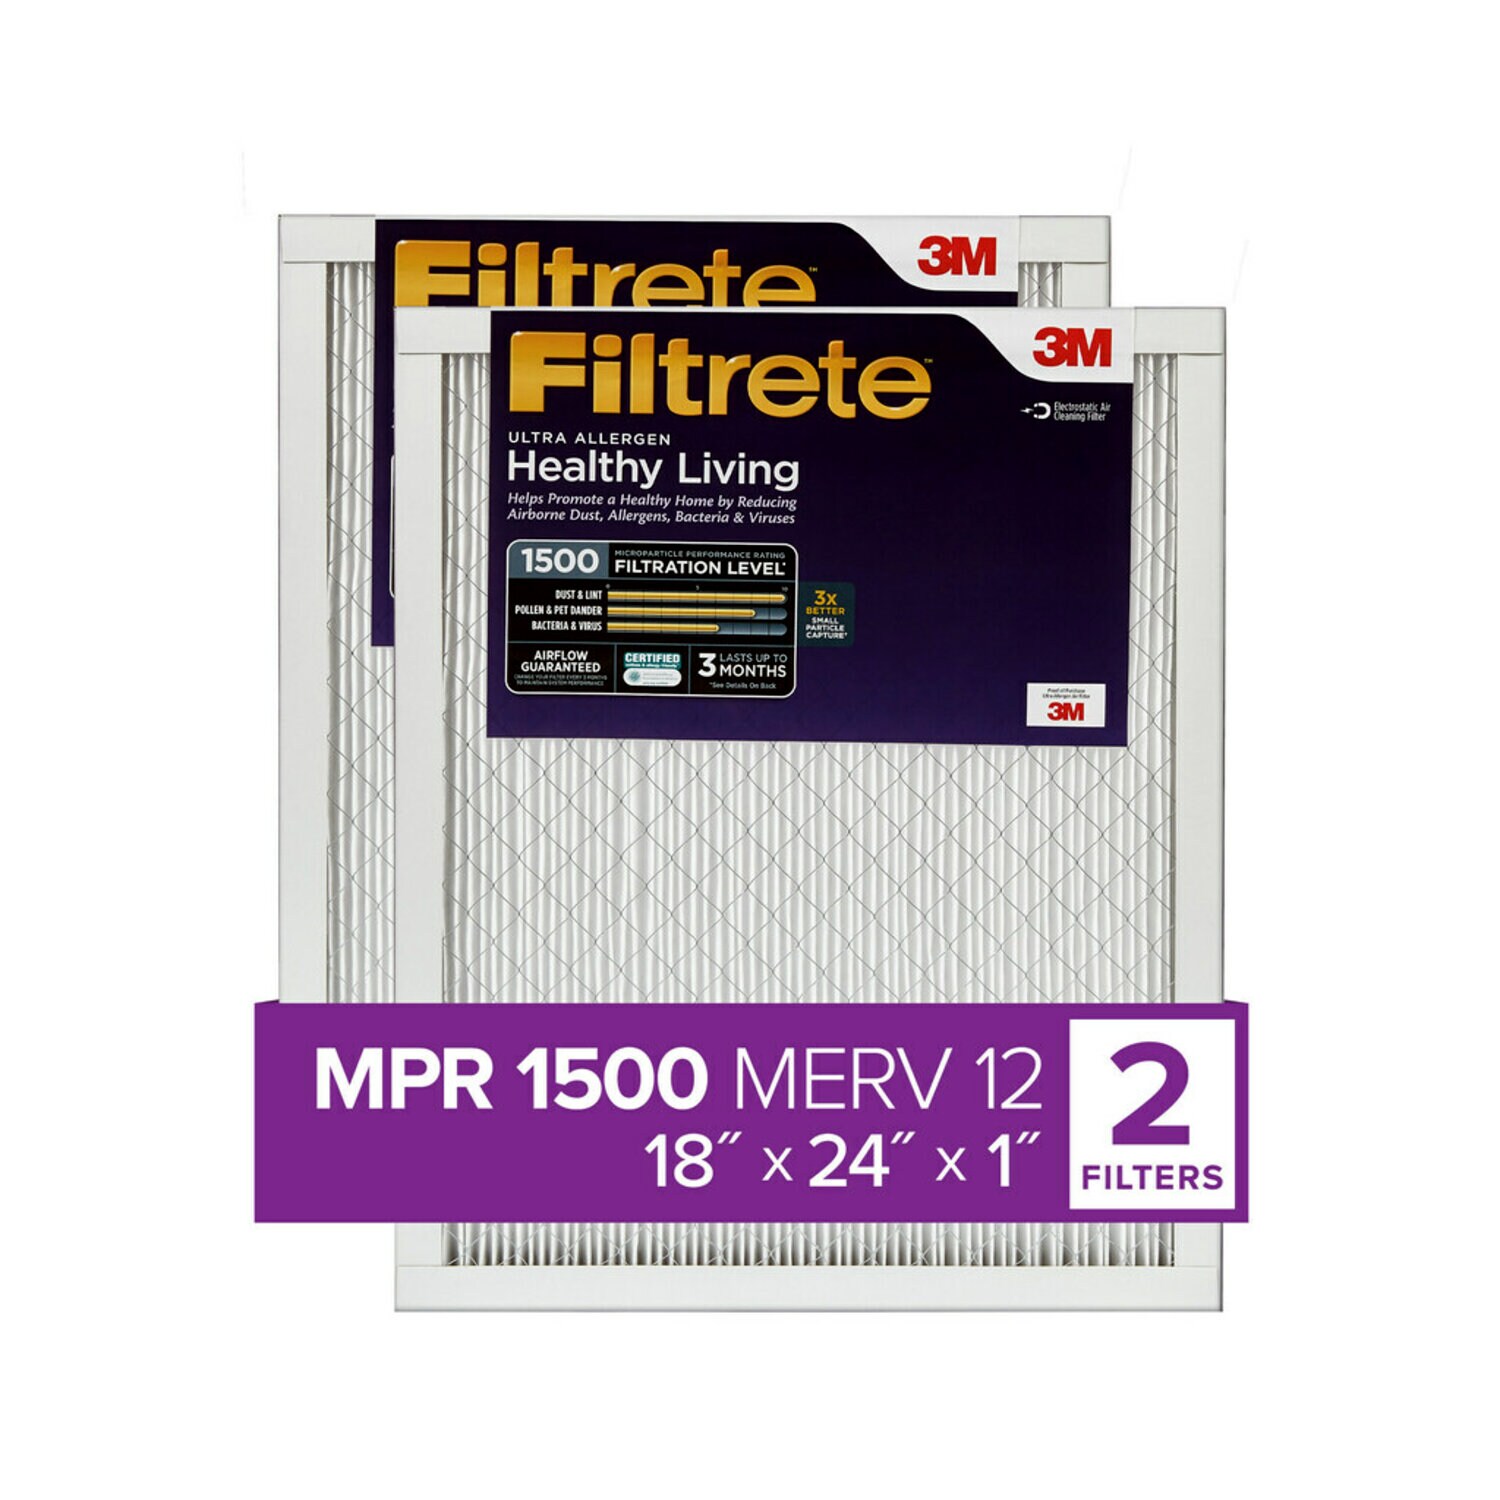 7100212150 - Filtrete Ultra Allergen Reduction Filter UR21-2PK-1E, 18 in x 24 in x 1 in (45.7 cm x 60.9 cm x 2.5 cm)